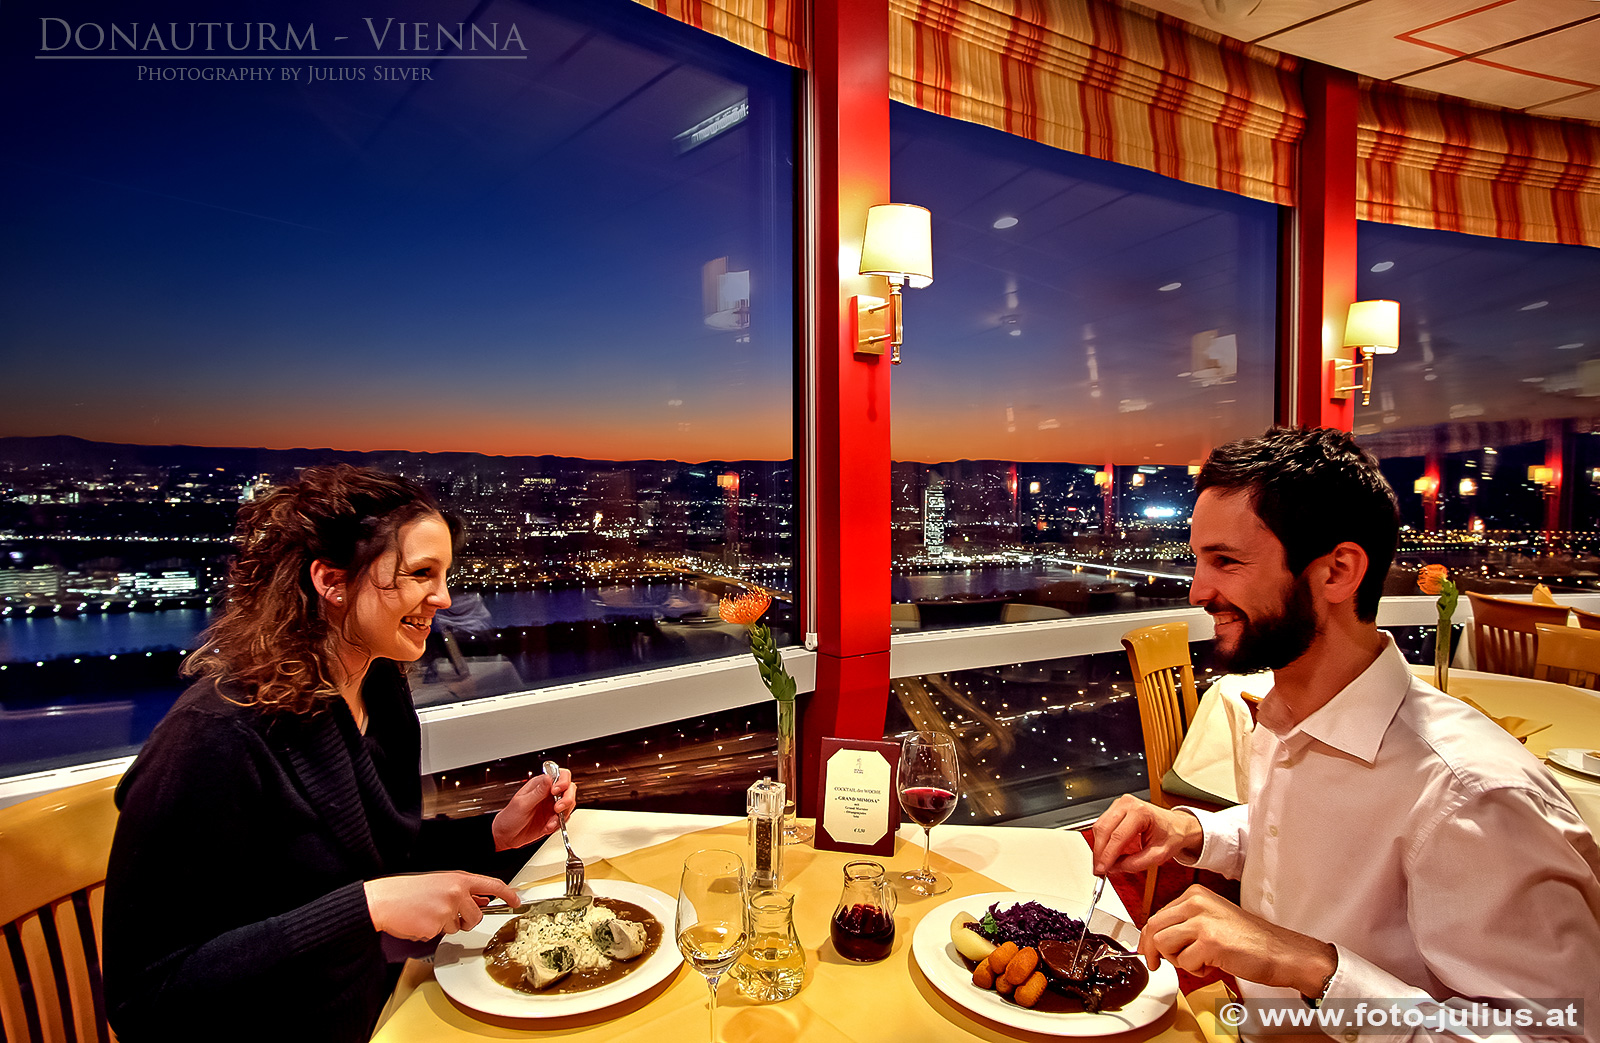 W4250a_Donauturm_Restaurant_Wien.jpg, 672kB